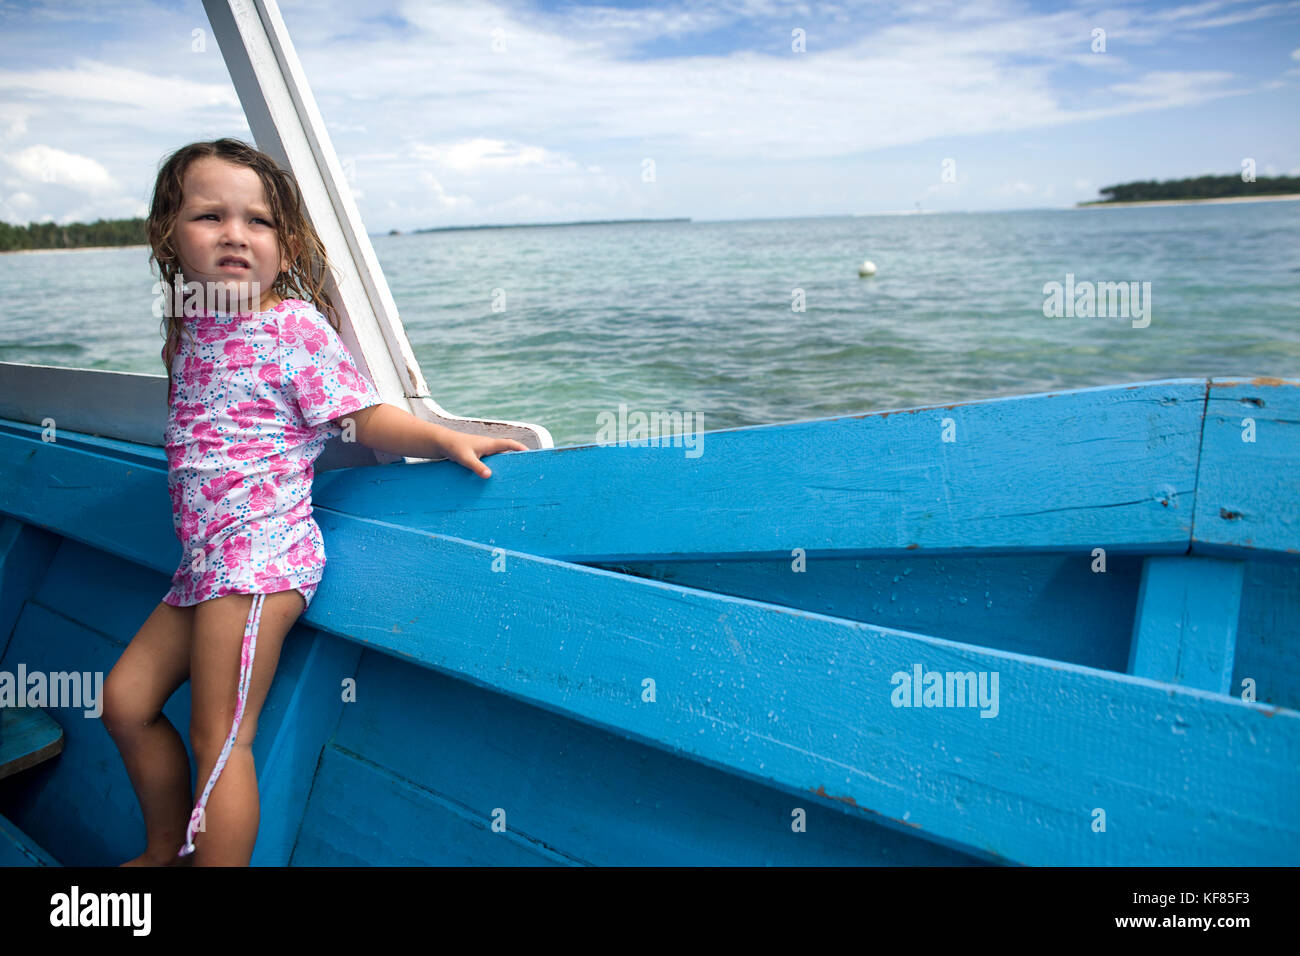 Indonesien, Mentawai Inseln, kandui Surf Resort, stehendes Mädchen in einem Holzboot, Weg suchen Stockfoto